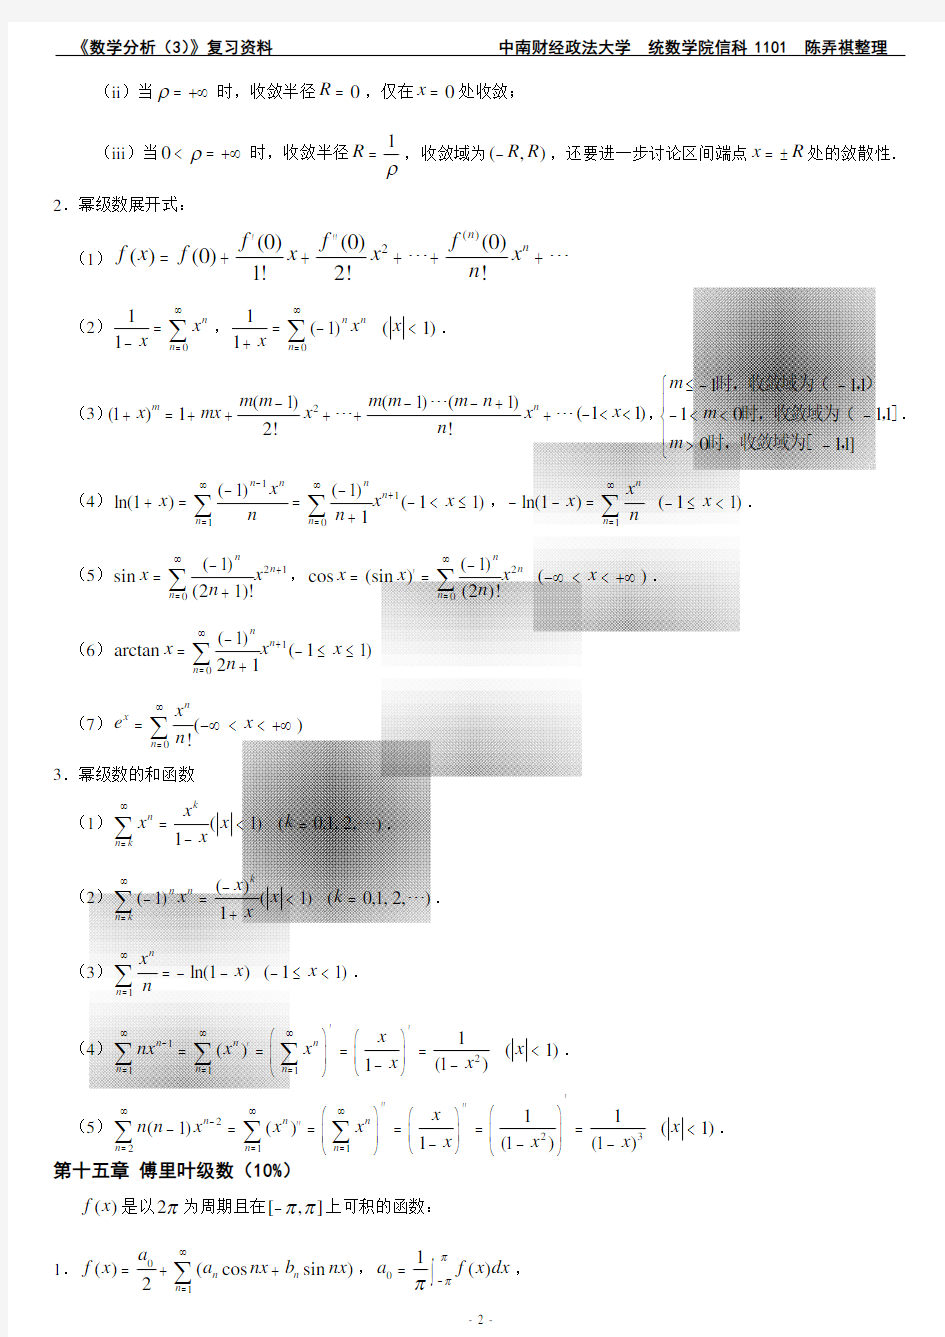 《数学分析》知识点整理.pdf